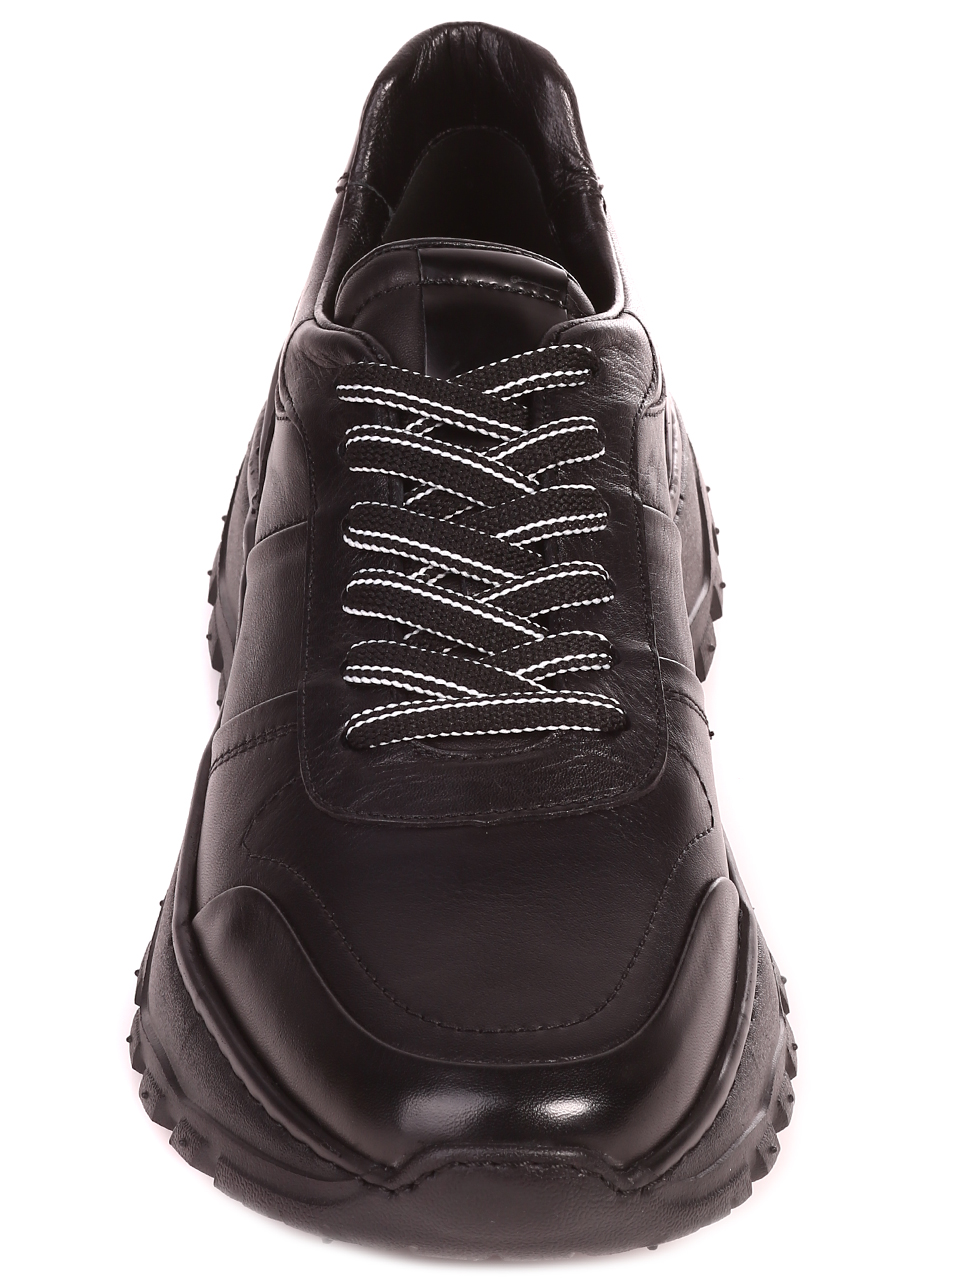 Eжедневни мъжки обувки от естественакожа 152-19202 S-3 all black